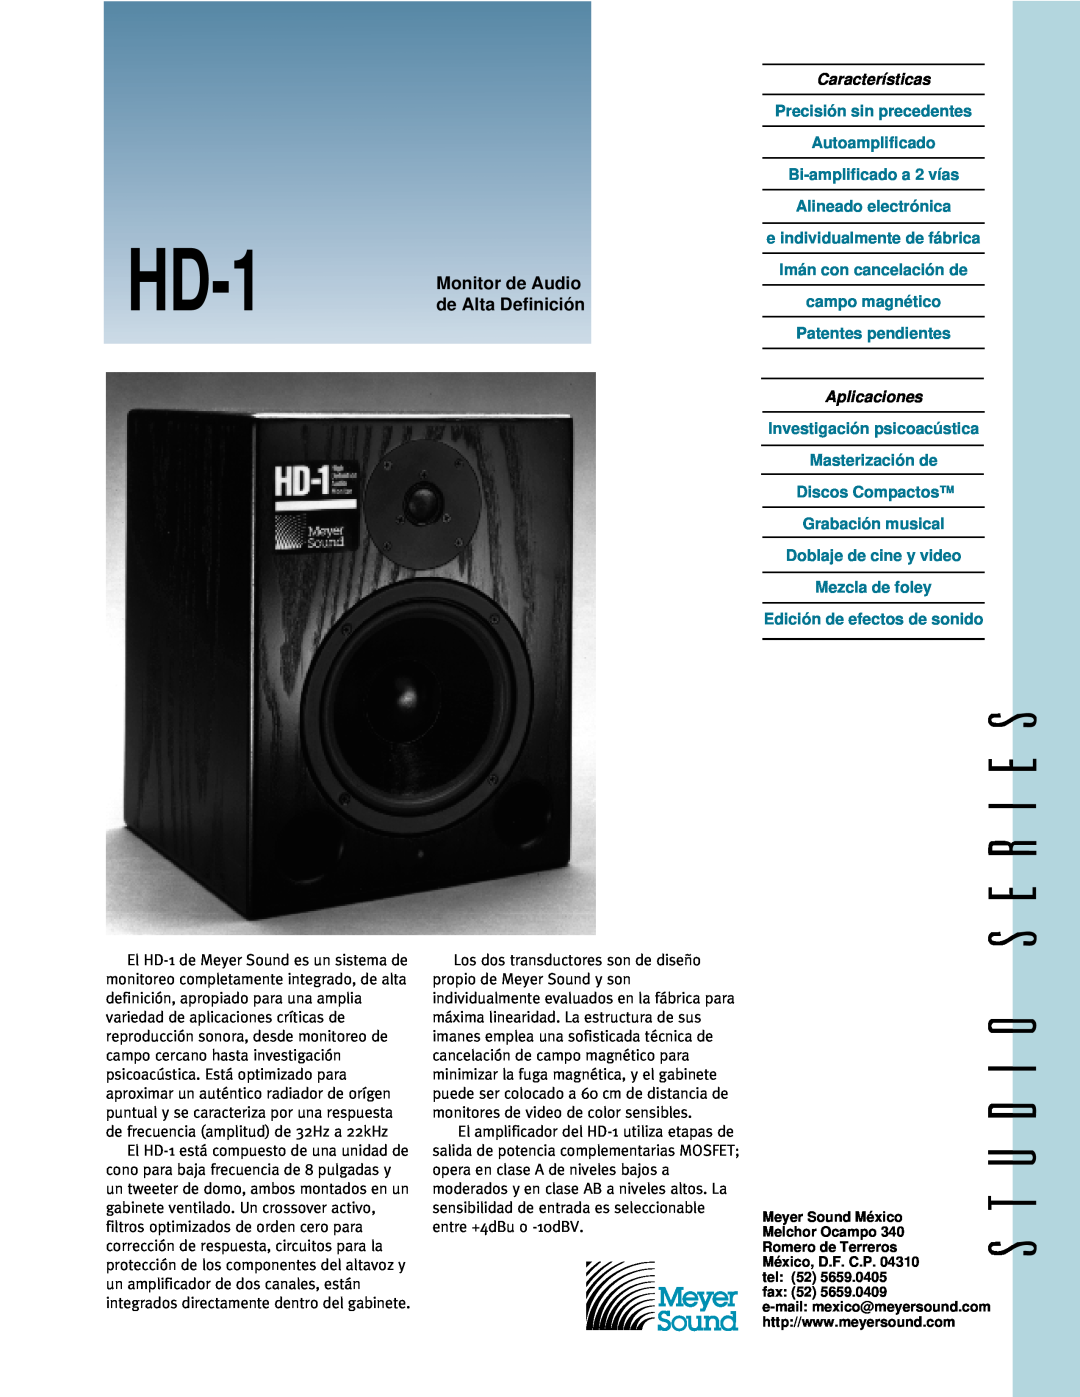 Meyer Sound HD-1 manual Monitor de Audio, de Alta Definición, Características, Aplicaciones, Edición de efectos de sonido 